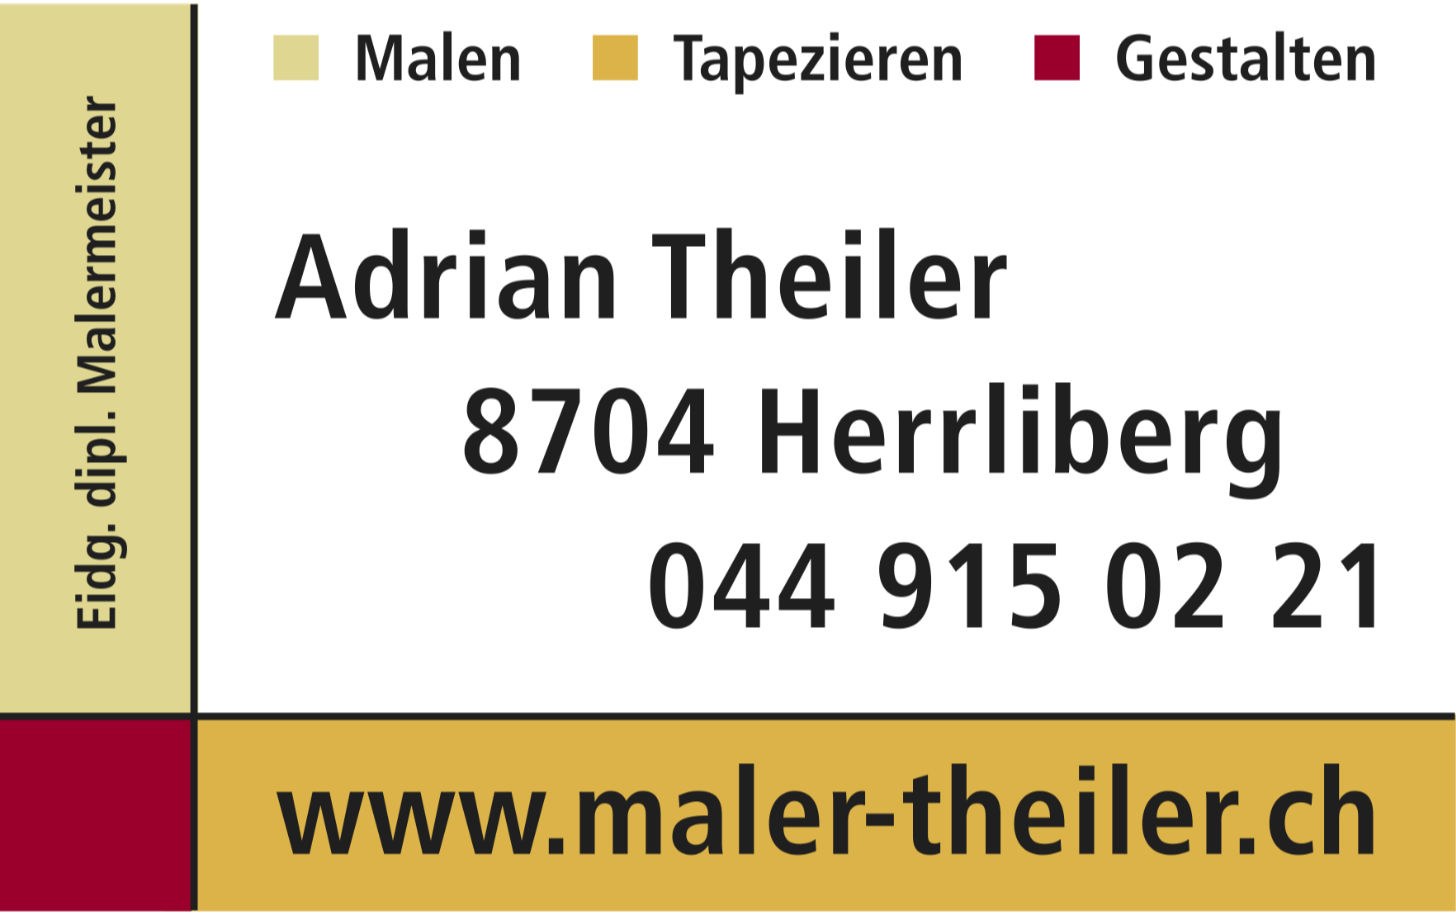 Adrian Theiler GmbH